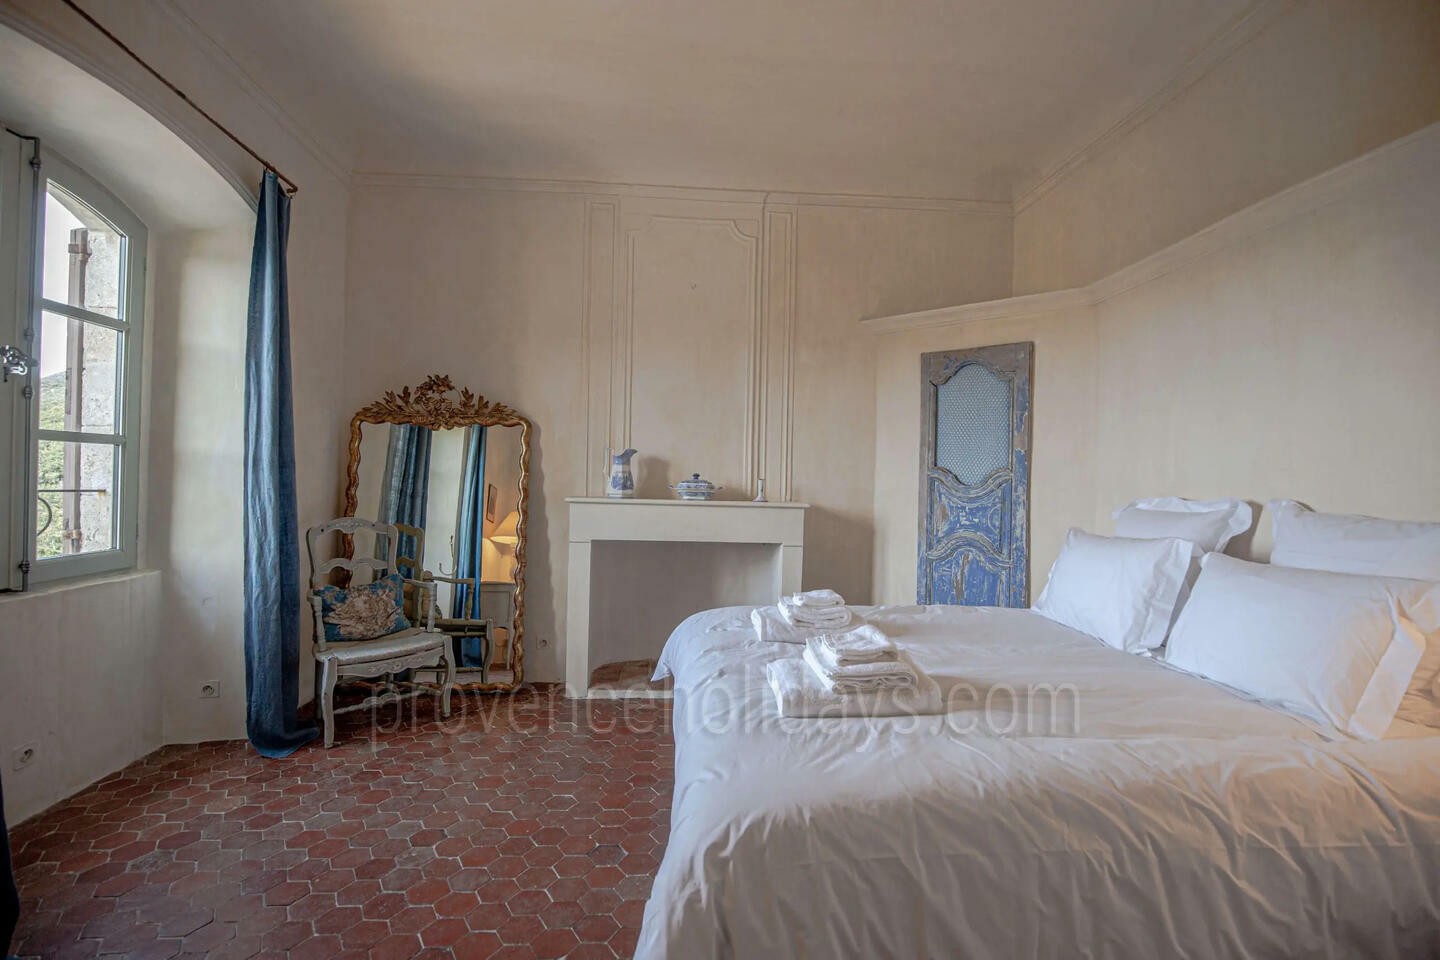 72 - Château de Gignac: Villa: Bedroom